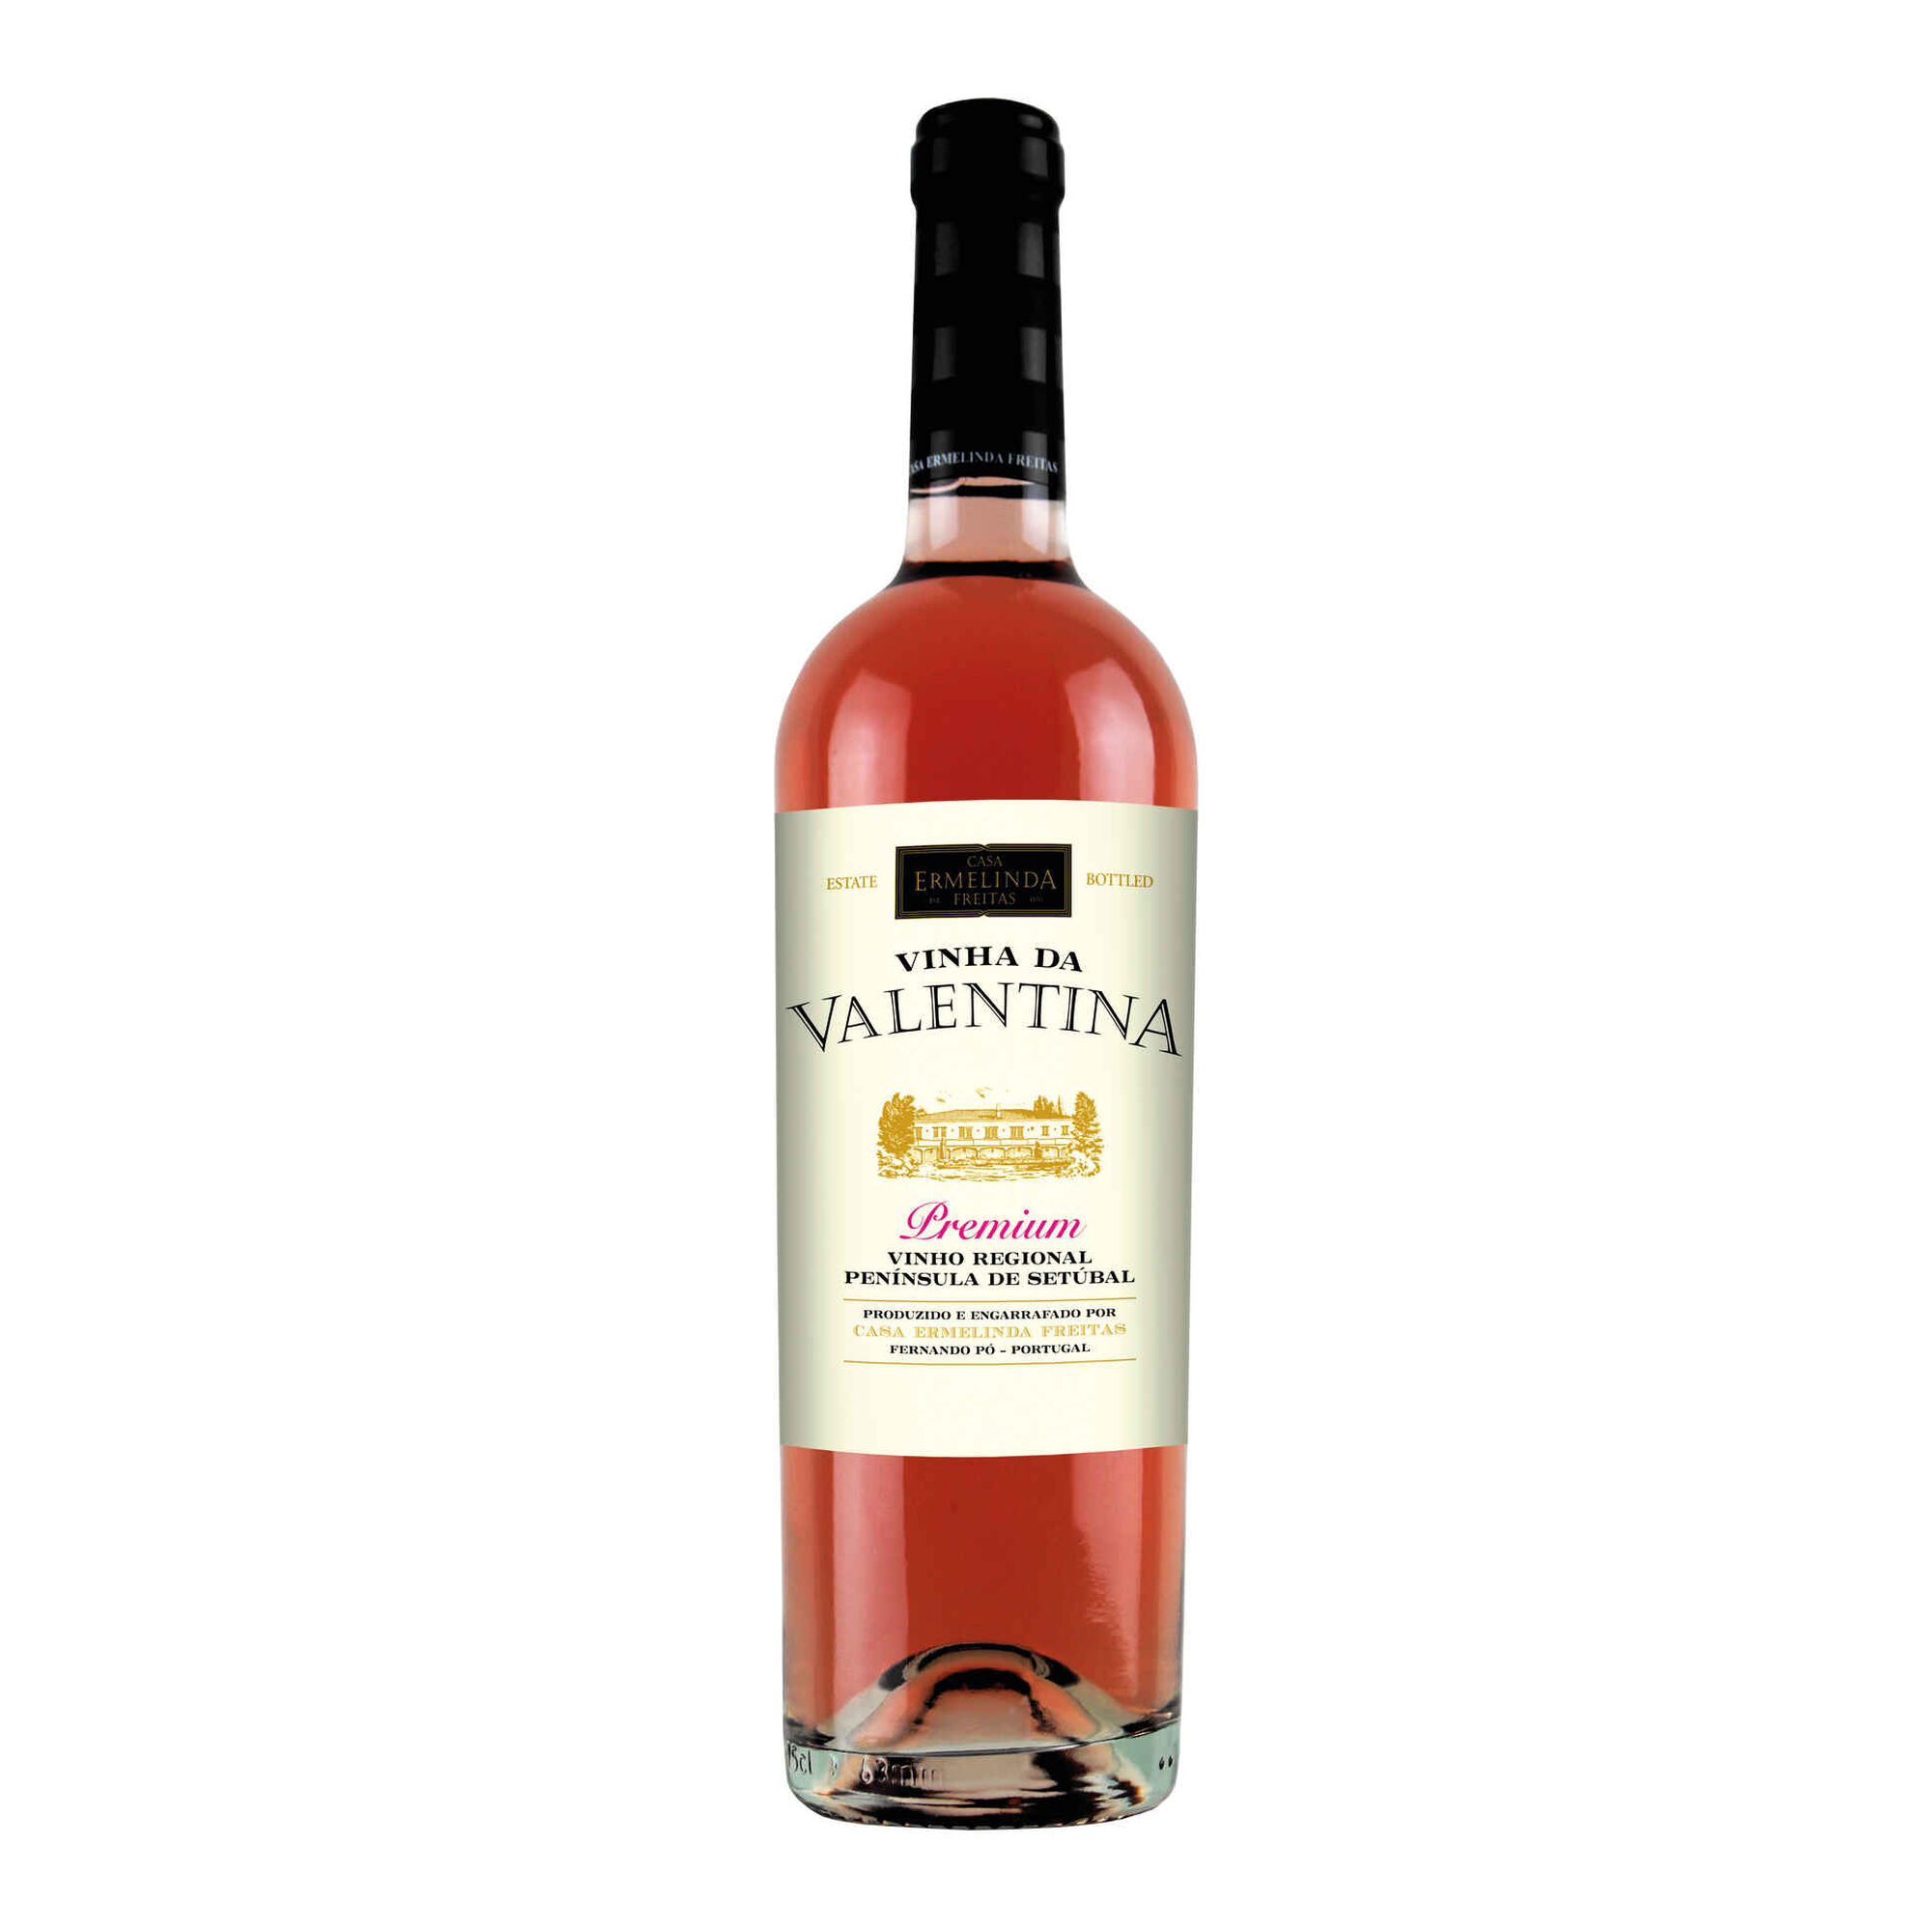 Vinha da Valentina Premium Regional Península de Setúbal Vinho Rosé